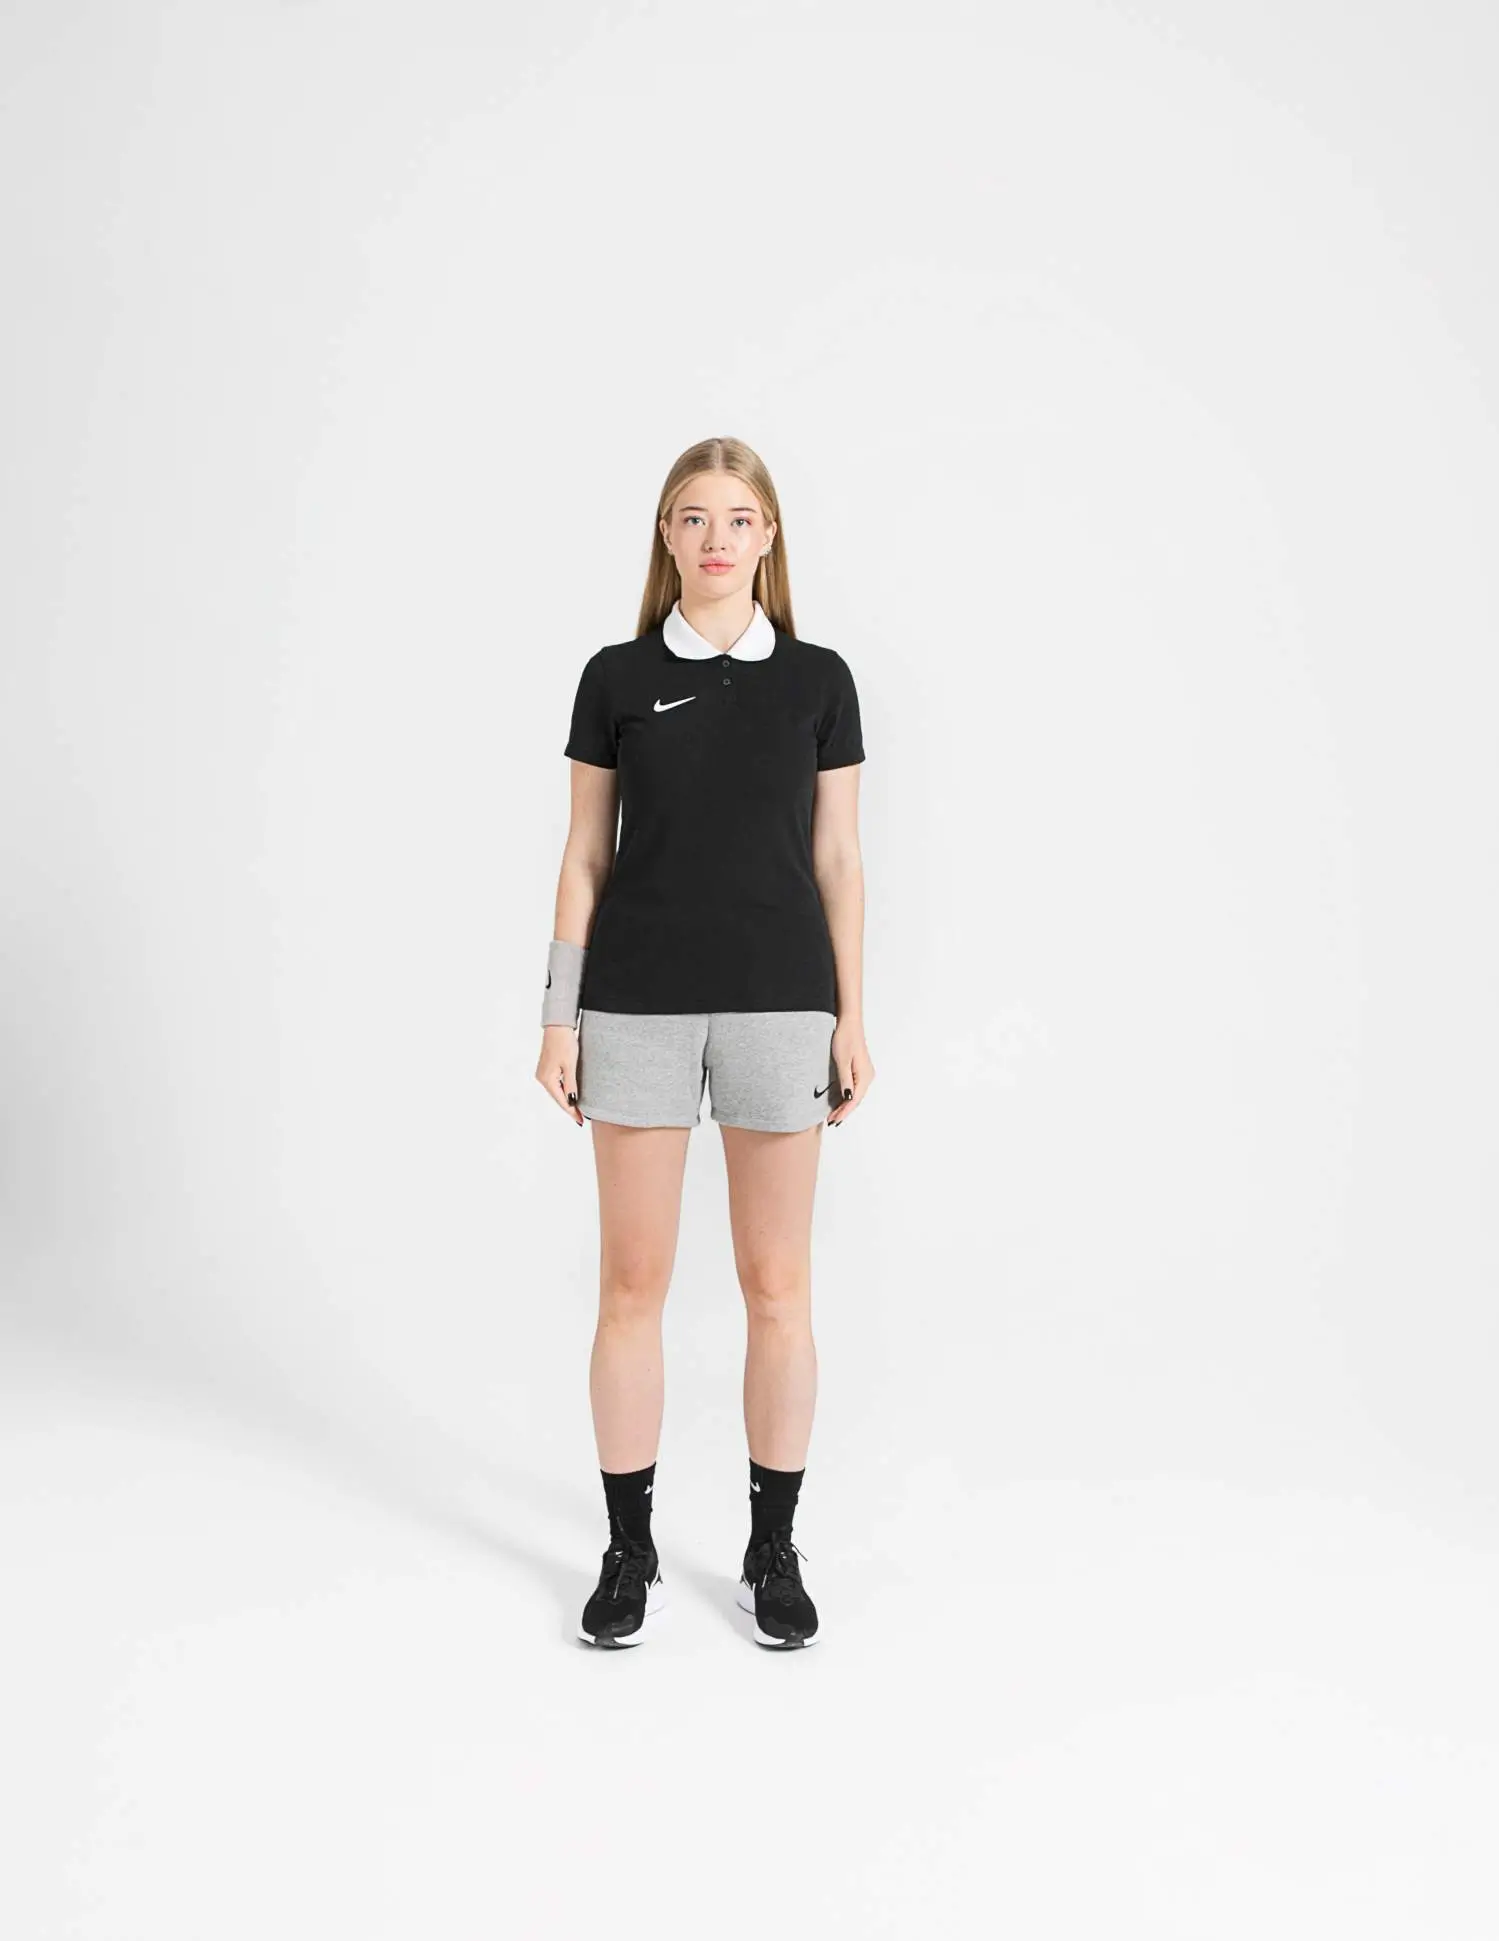 Nike Park 20 Siyah Kadın Polo Tişört  -CW6965-010